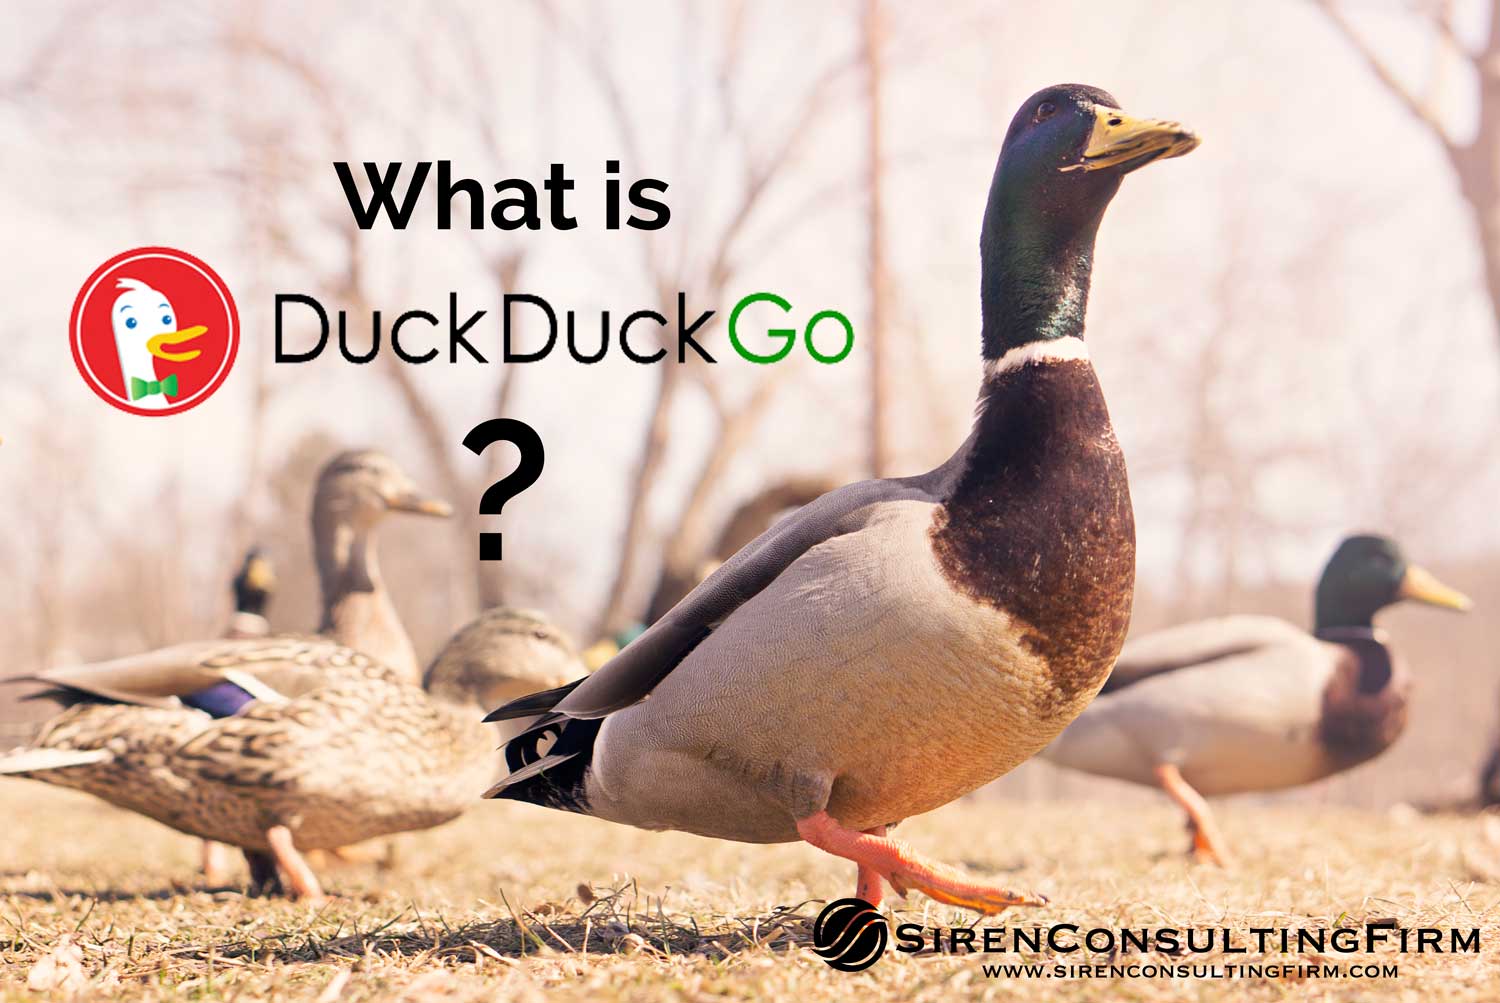 What Is DuckDuckGo?